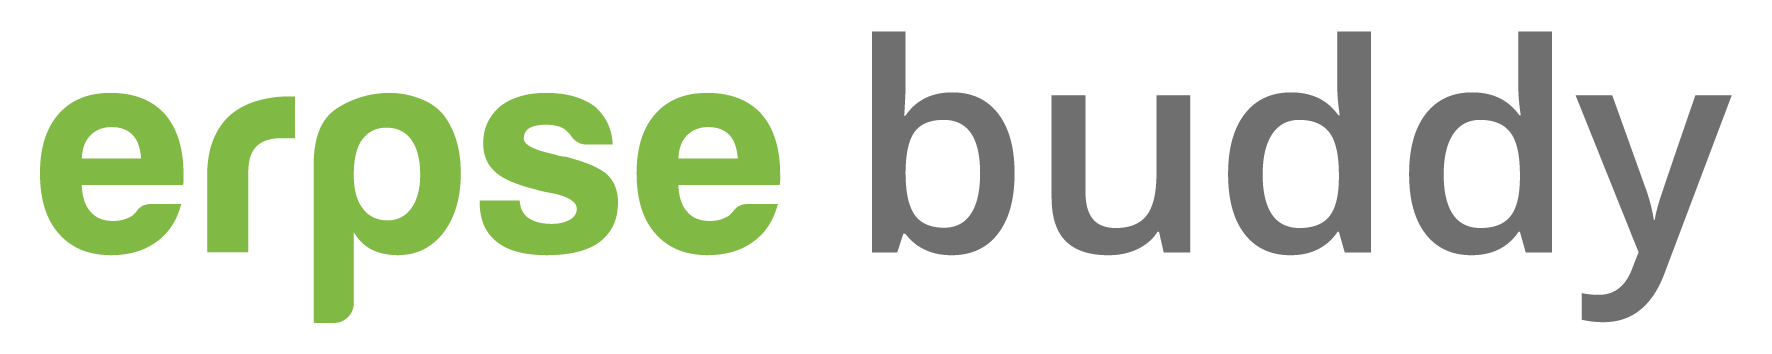 erpse logo